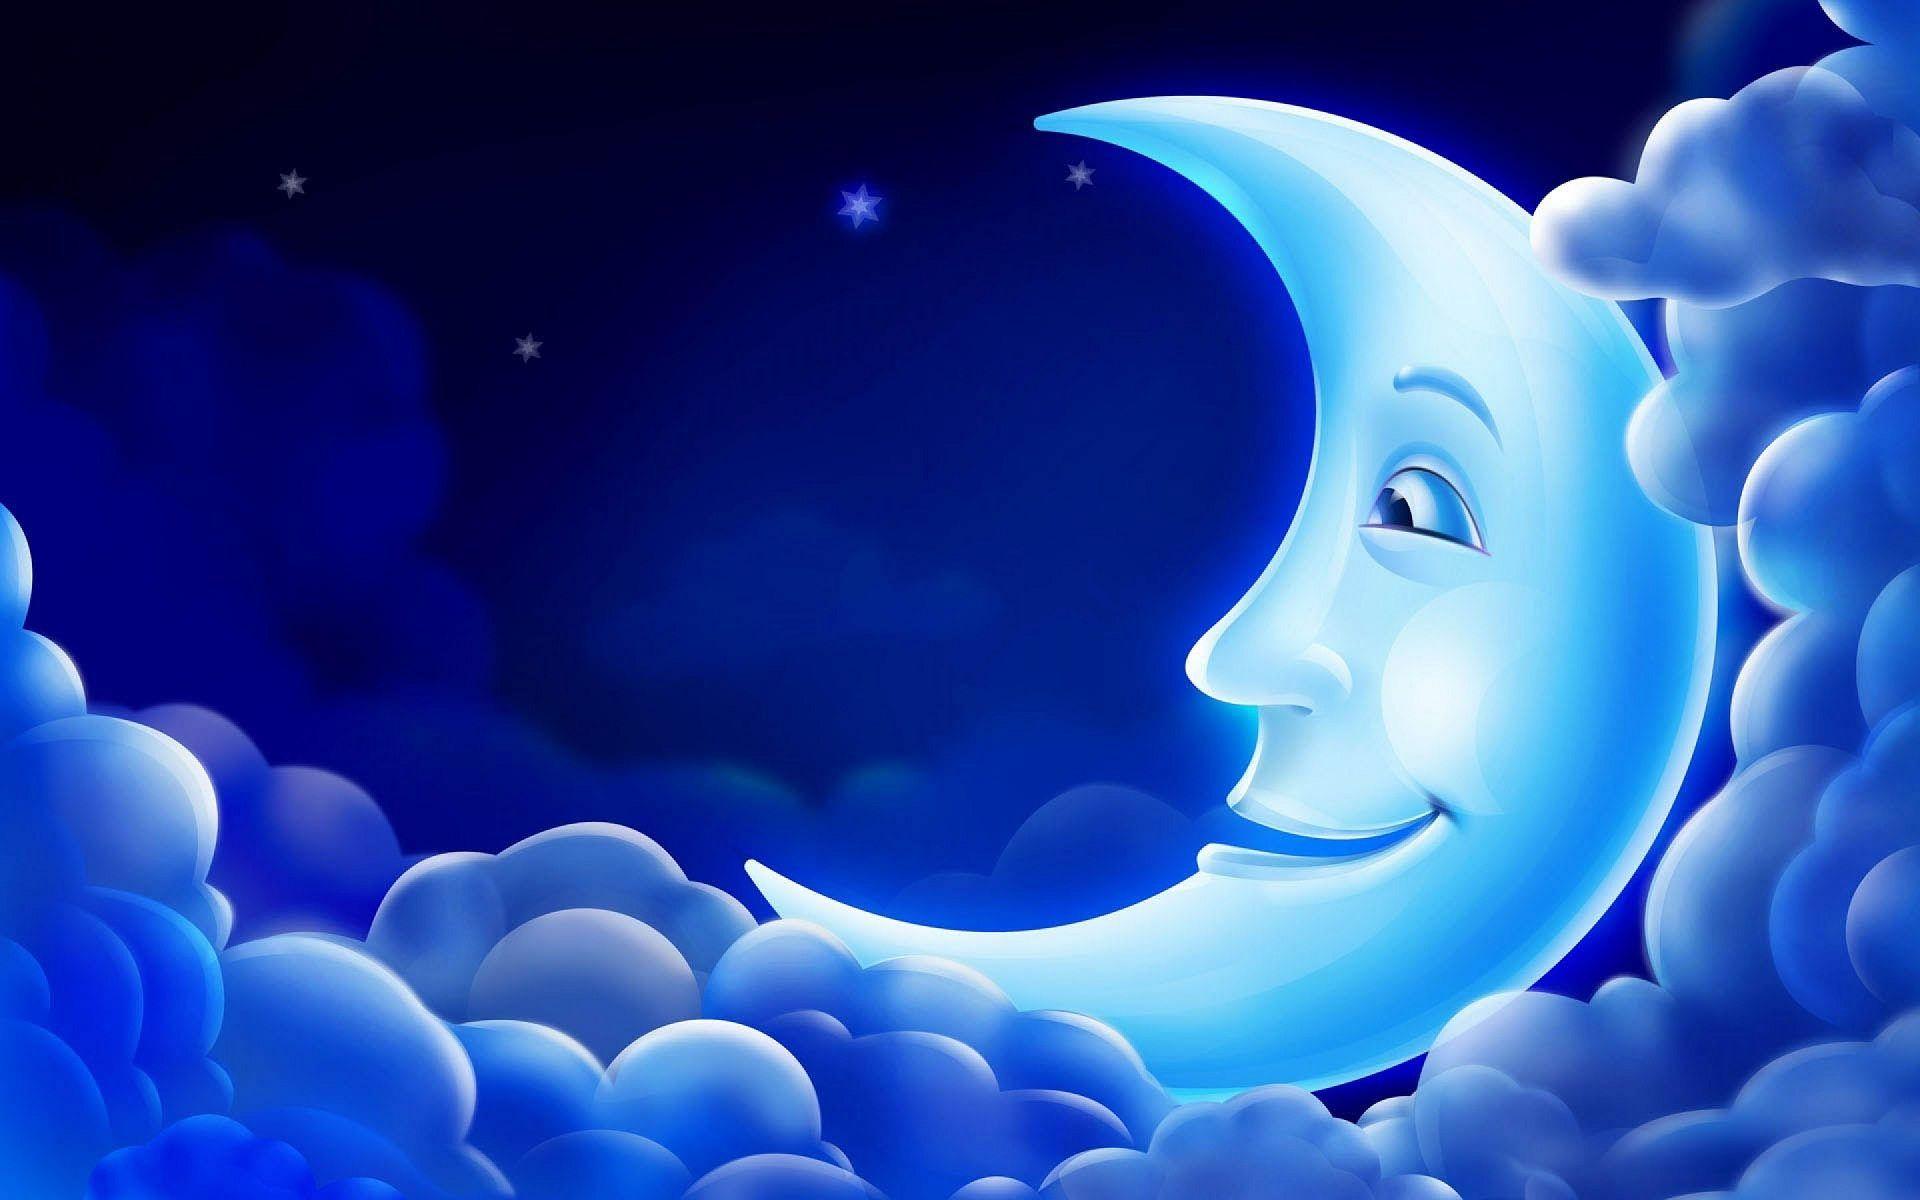 Good night lovely moon in sky wallpaper. HD Wallpaper Rocks